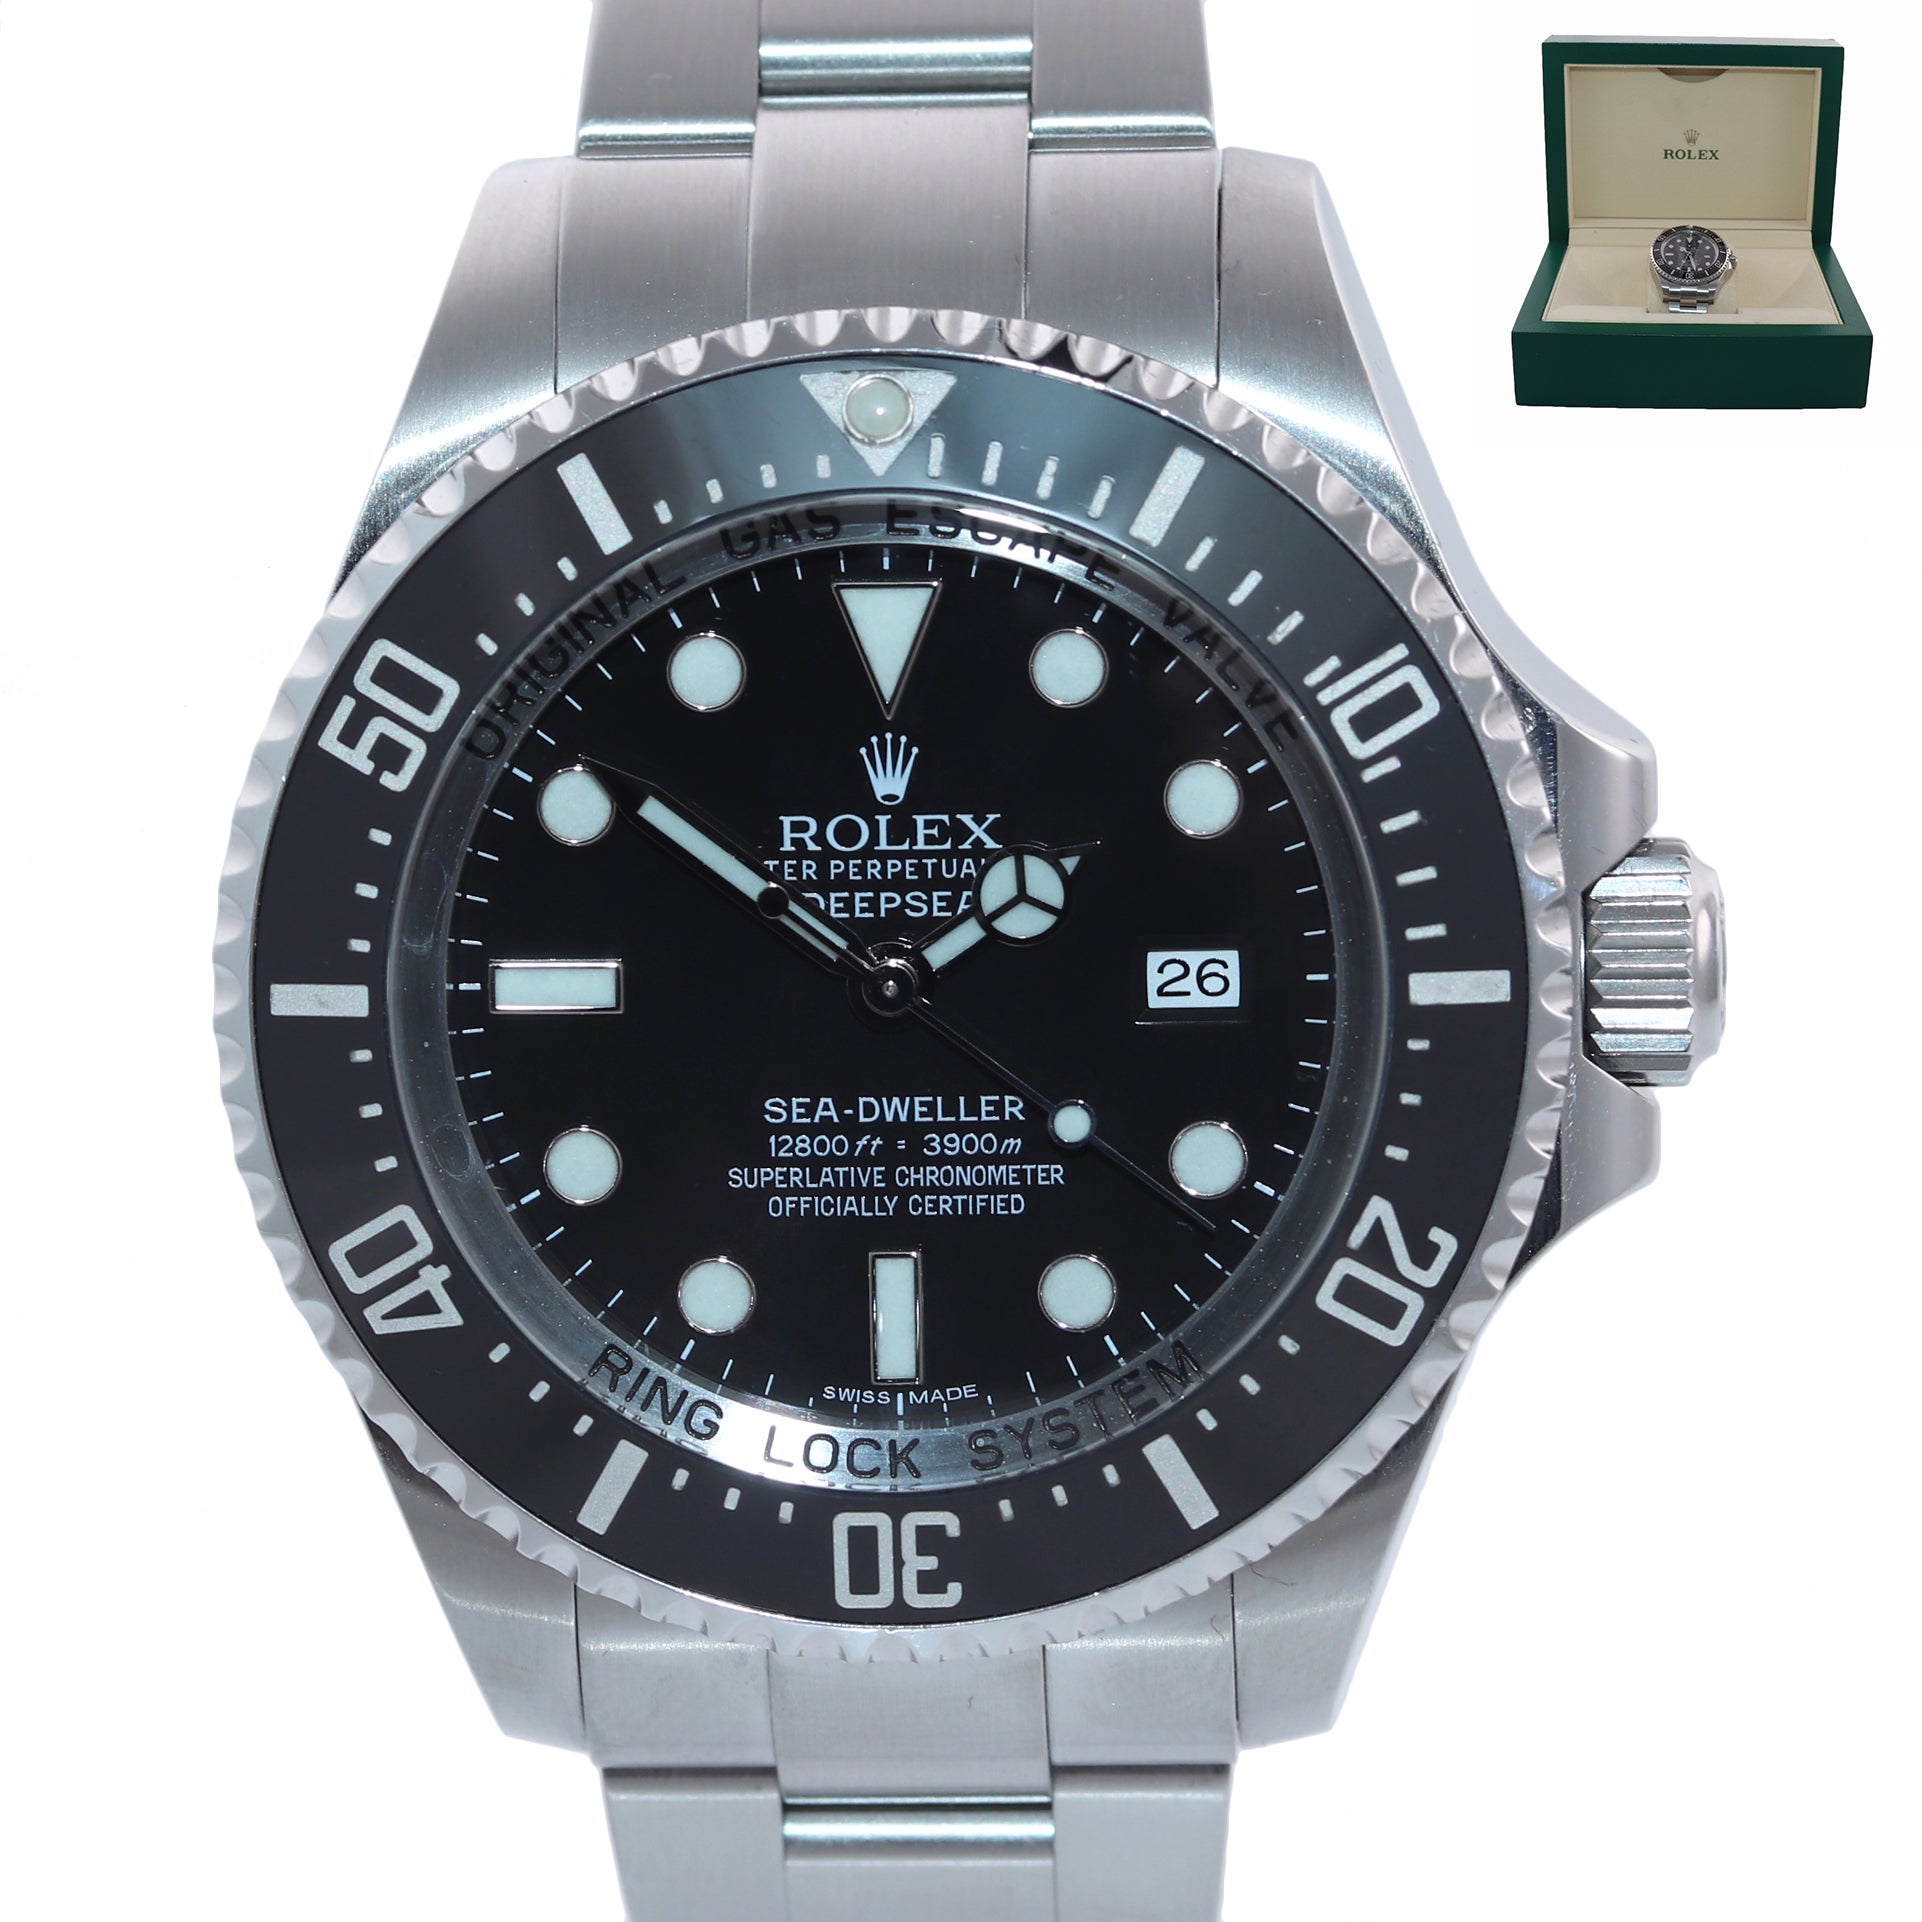 MINT Rolex Sea-Dweller Deepsea 116660 Stainless Steel 44mm Black Watch Box